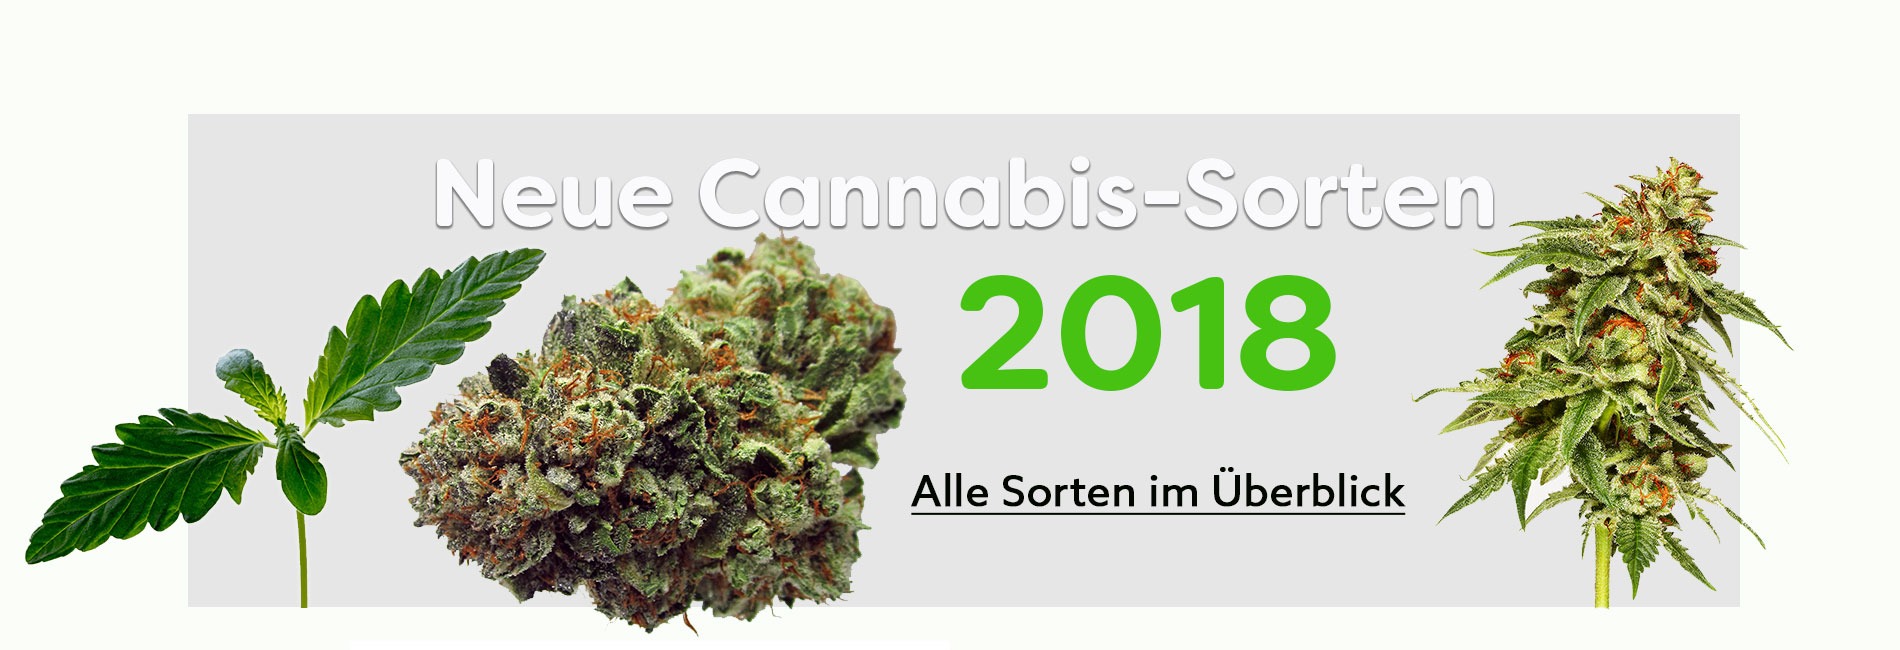 neue-Cannabis-sorten-2018